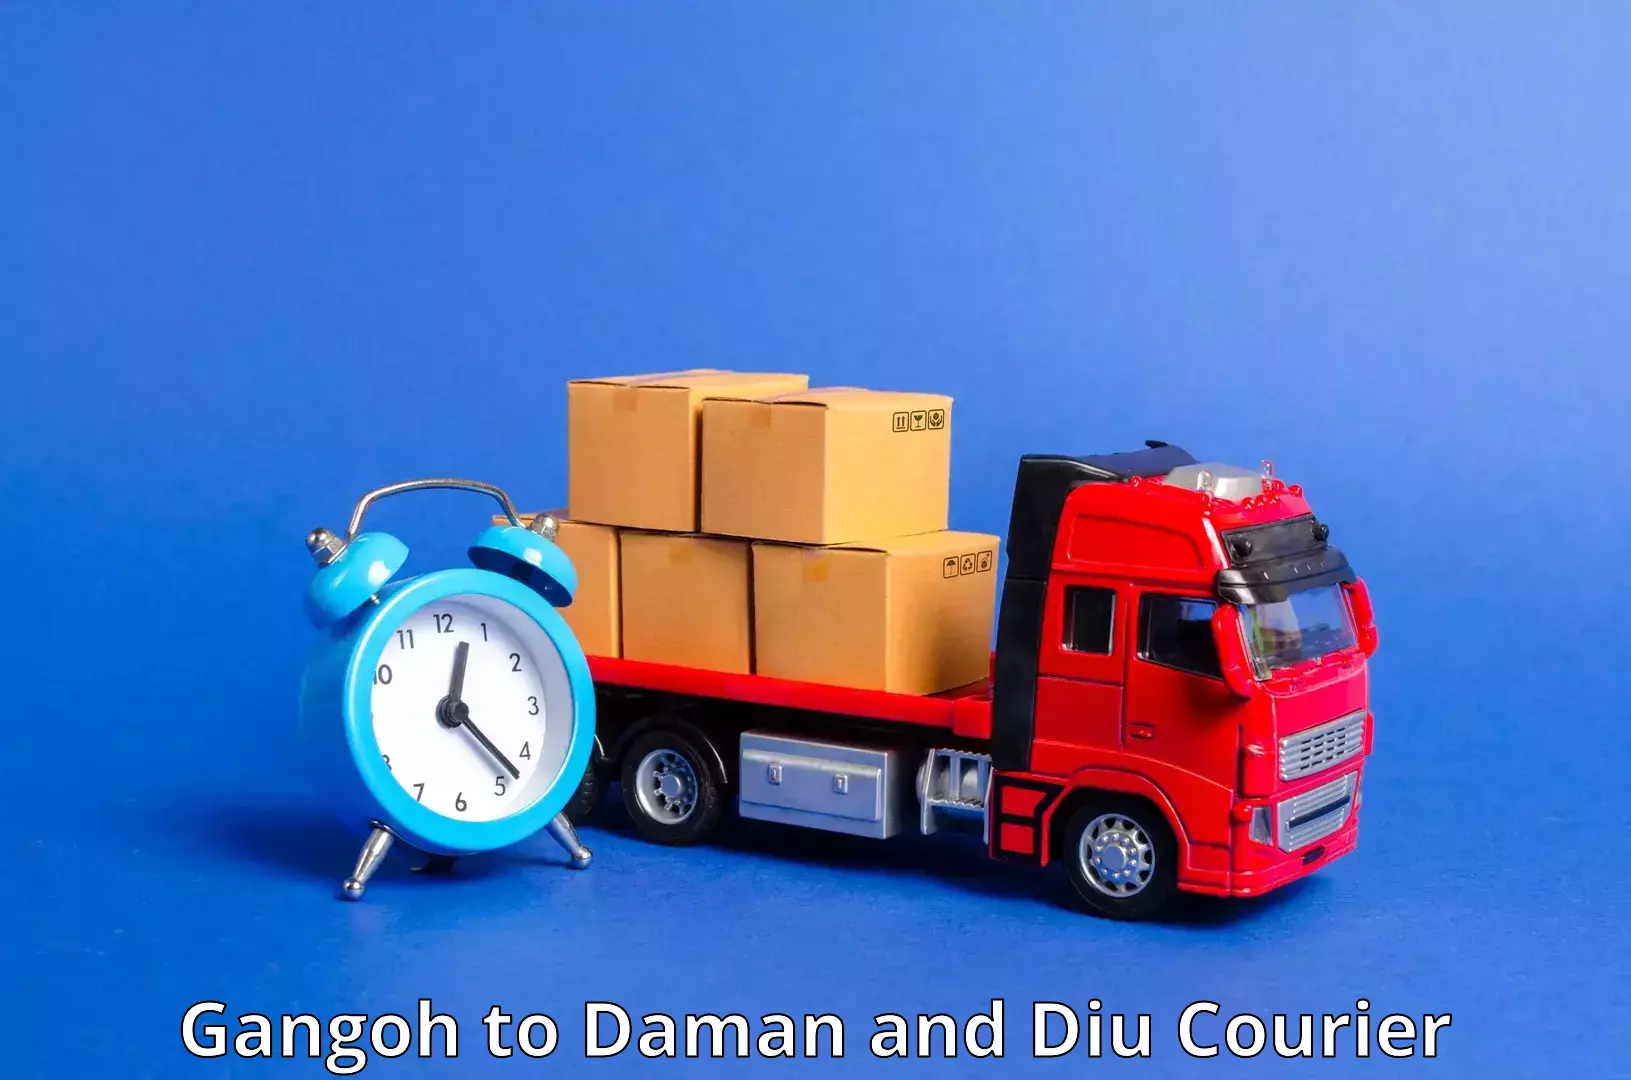 Urgent courier needs Gangoh to Daman and Diu